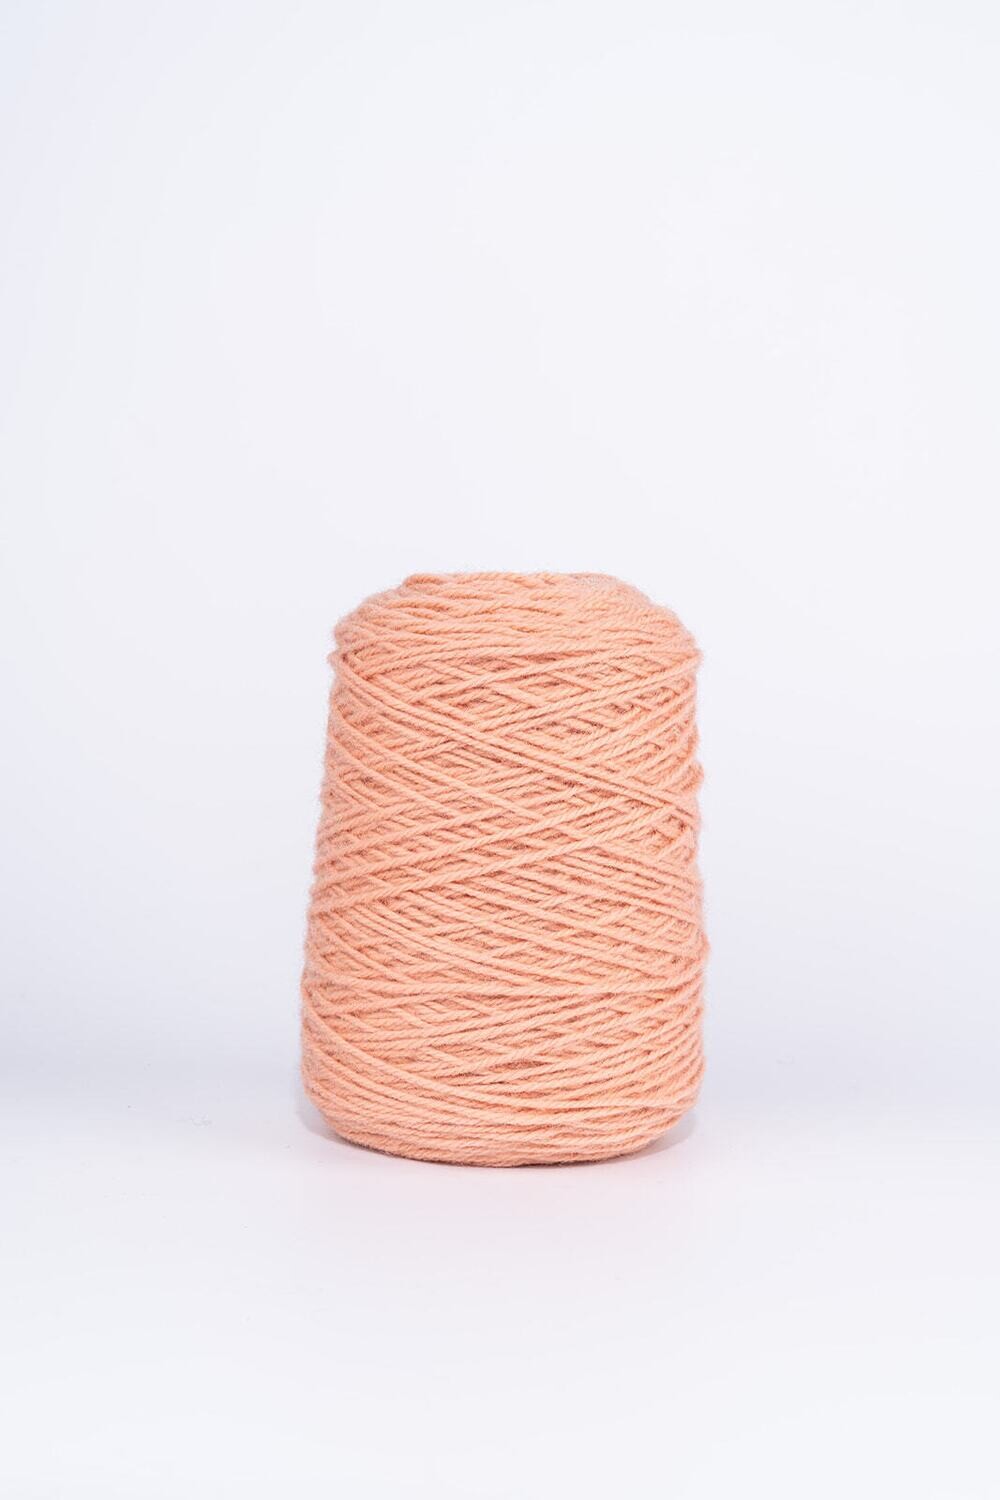 100% Wool Rug Yarn On Cones - Peach